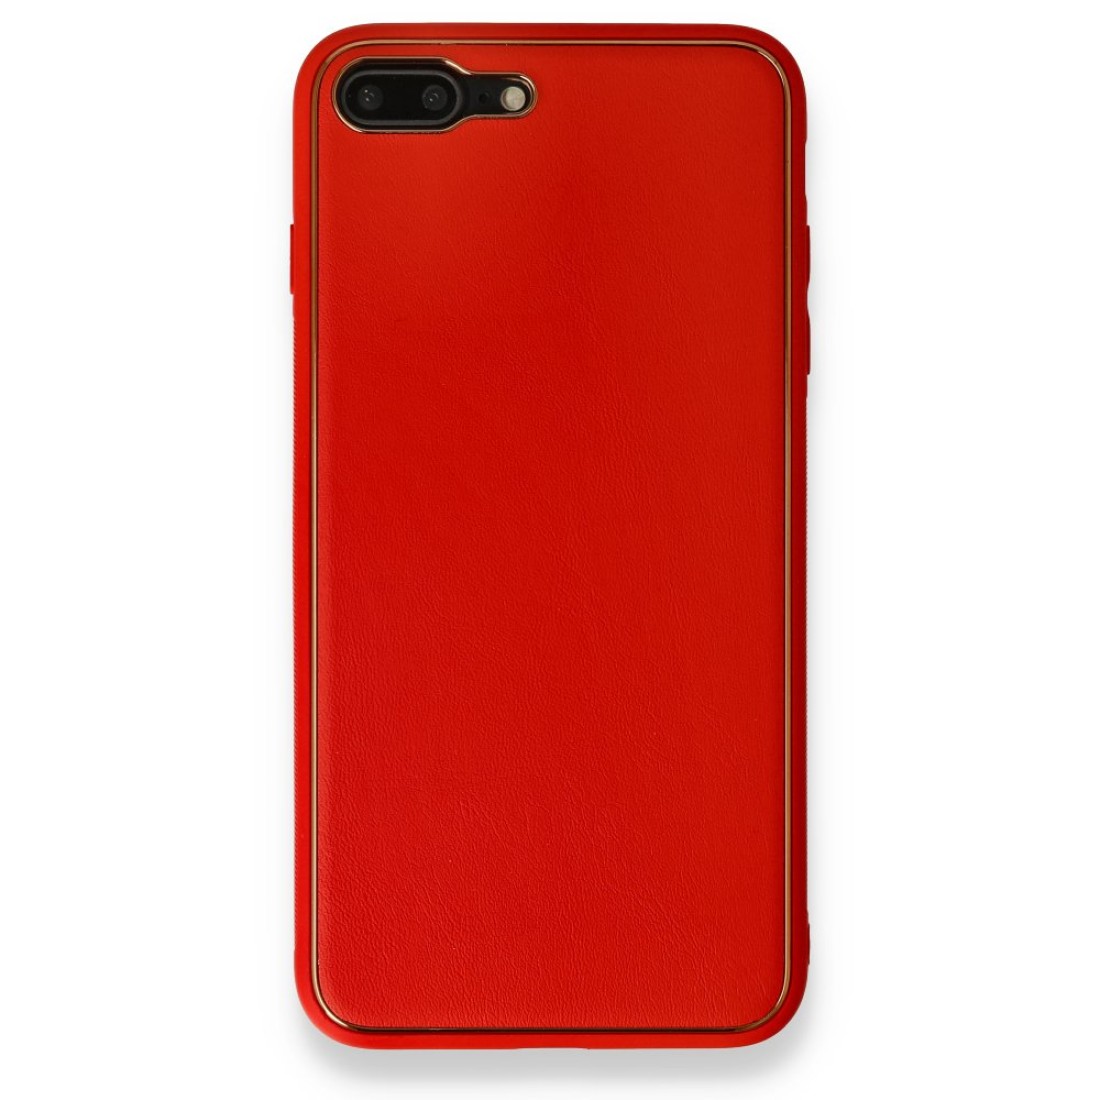 Apple iPhone 7 Plus Kılıf Coco Deri Silikon Kapak - Kırmızı